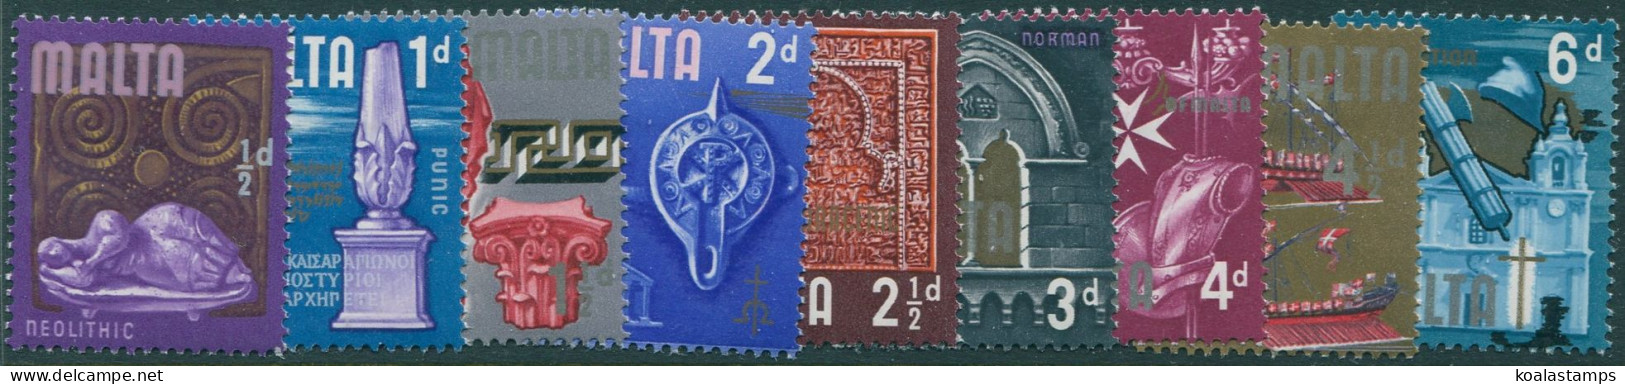 Malta 1965 SG330-338 Era Issues (9) MLH - Malta